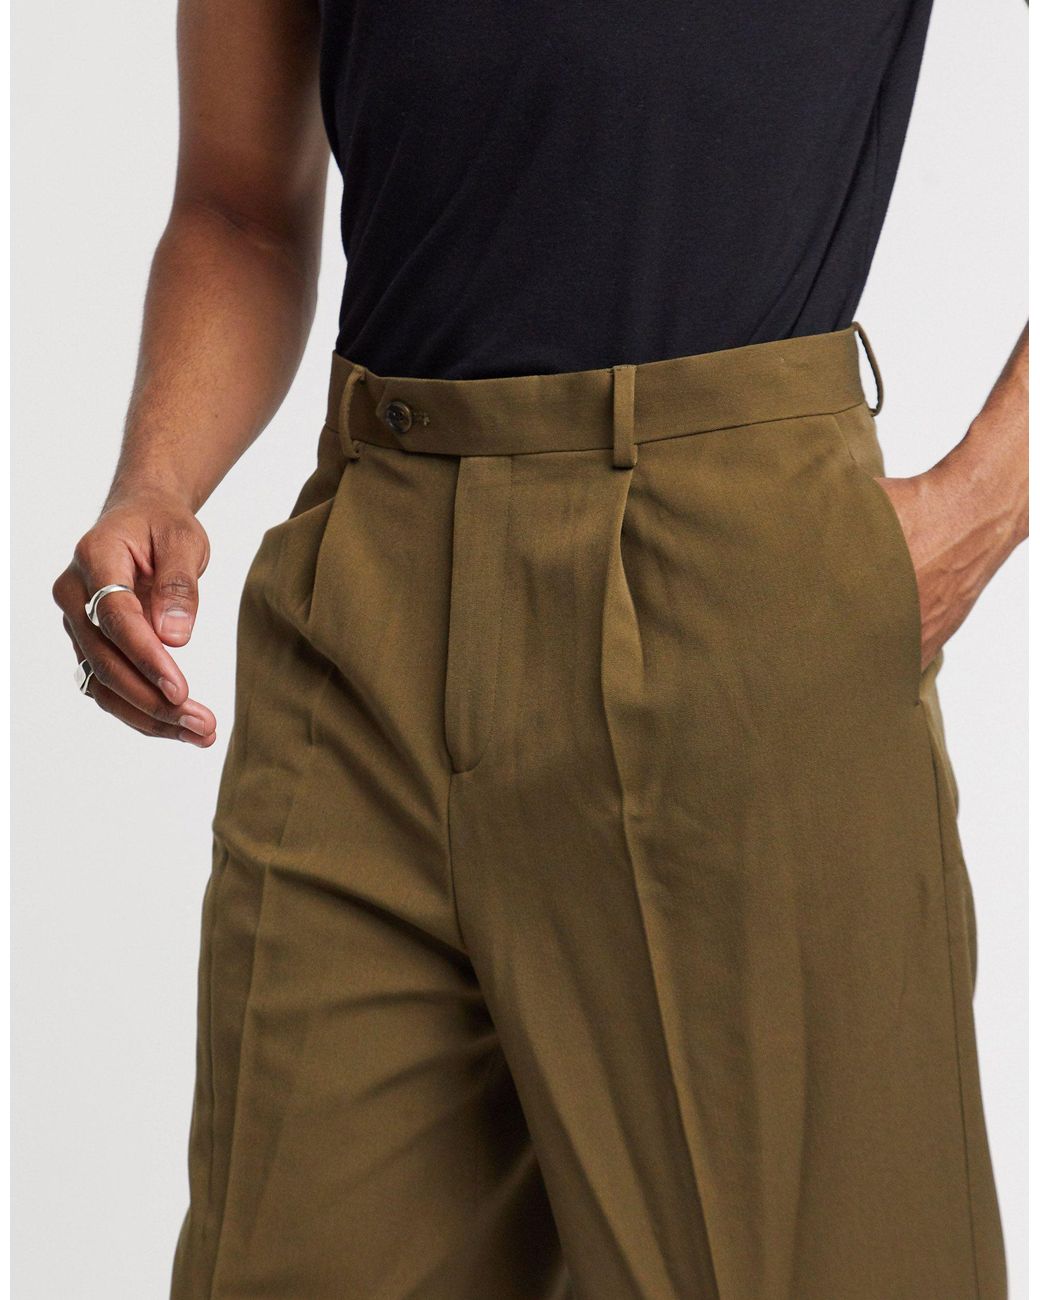 High Waist Men's Trousers | High Waist Trousers Men | Men's High Waist Pants  - Fashion - Aliexpress